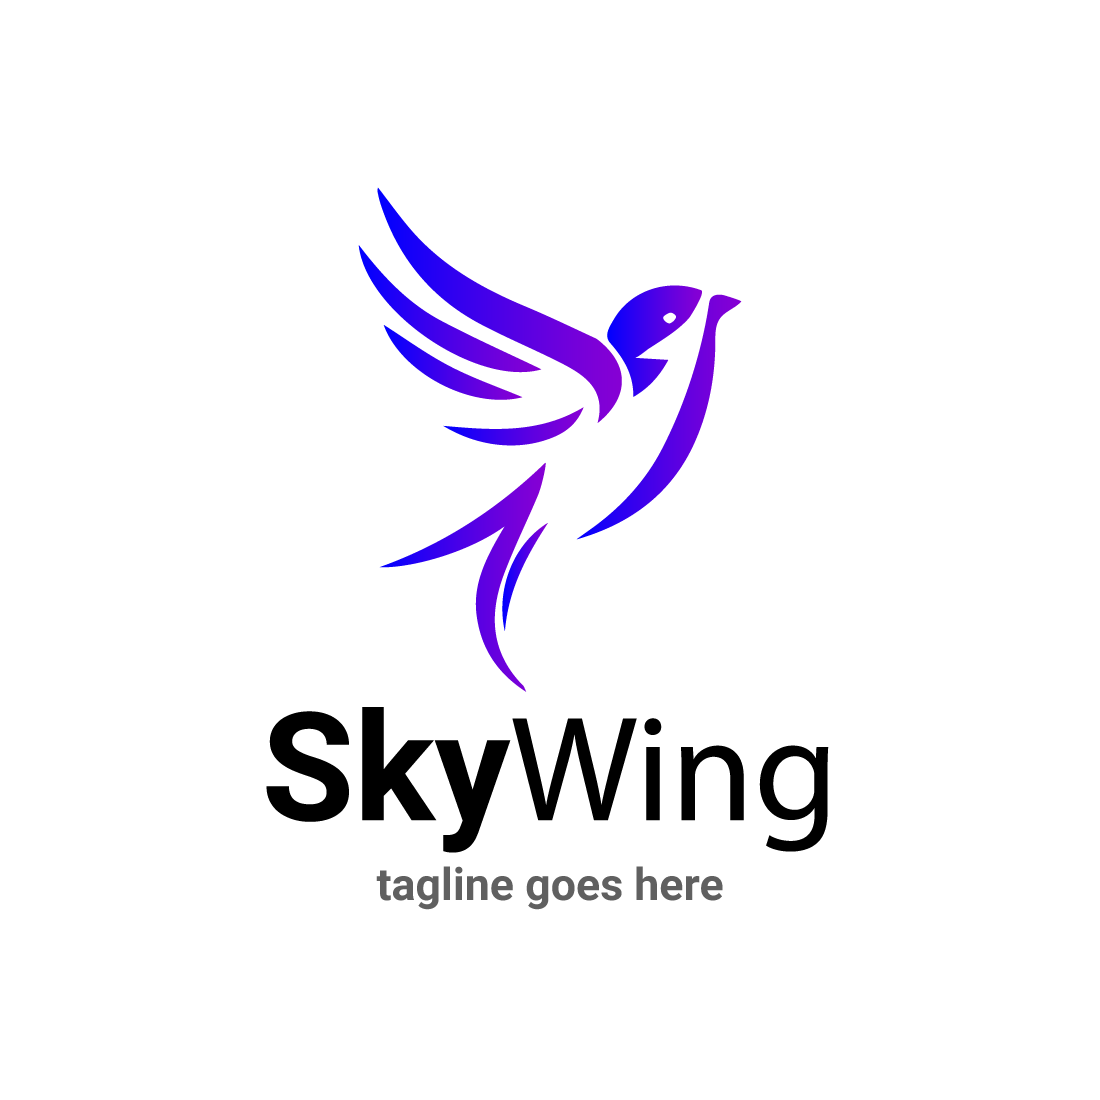 Sky wing logo , bird logo cover image.